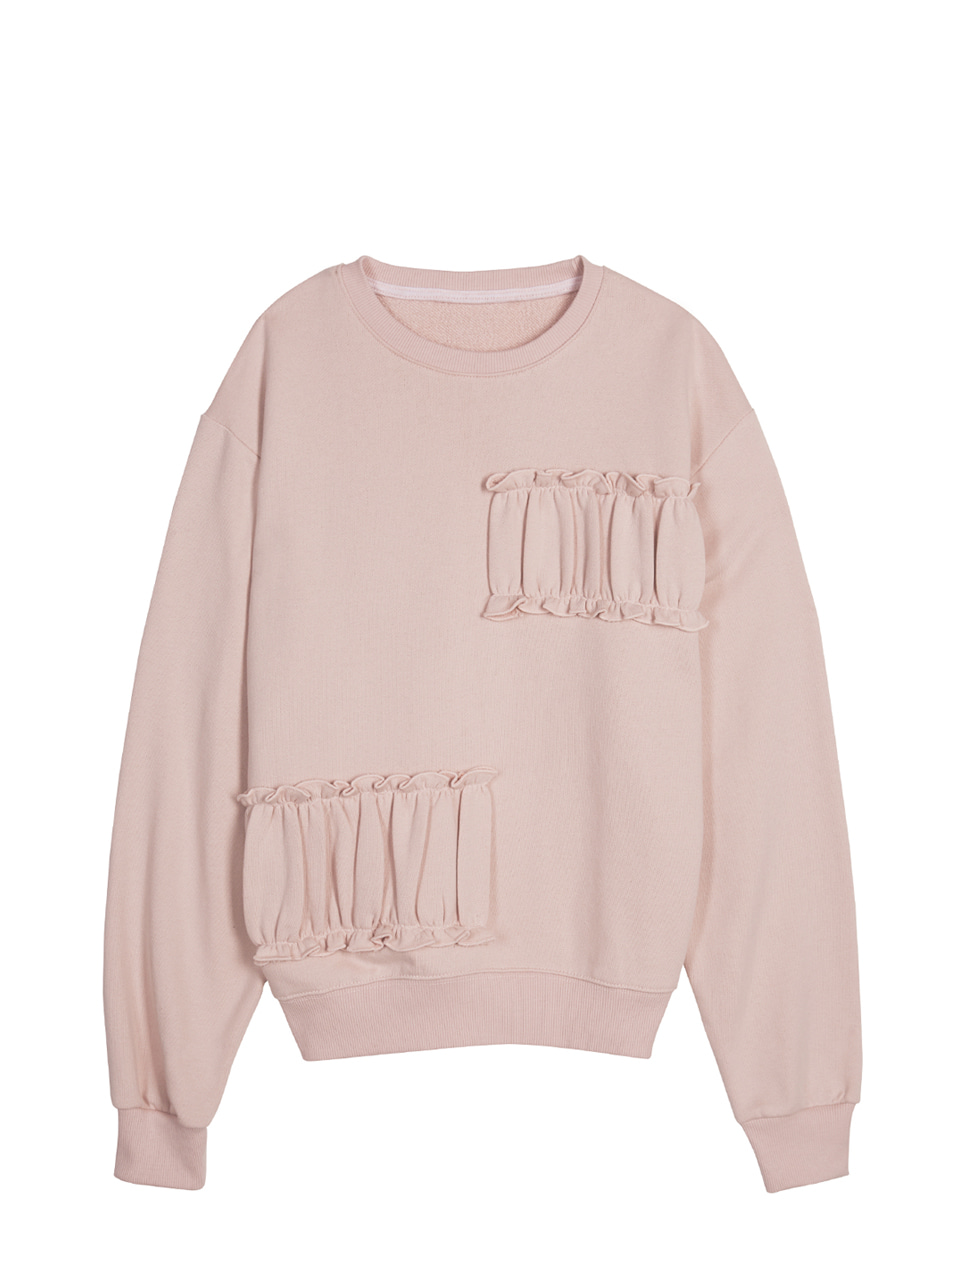 Partial Shirring Sweatshirts - pink